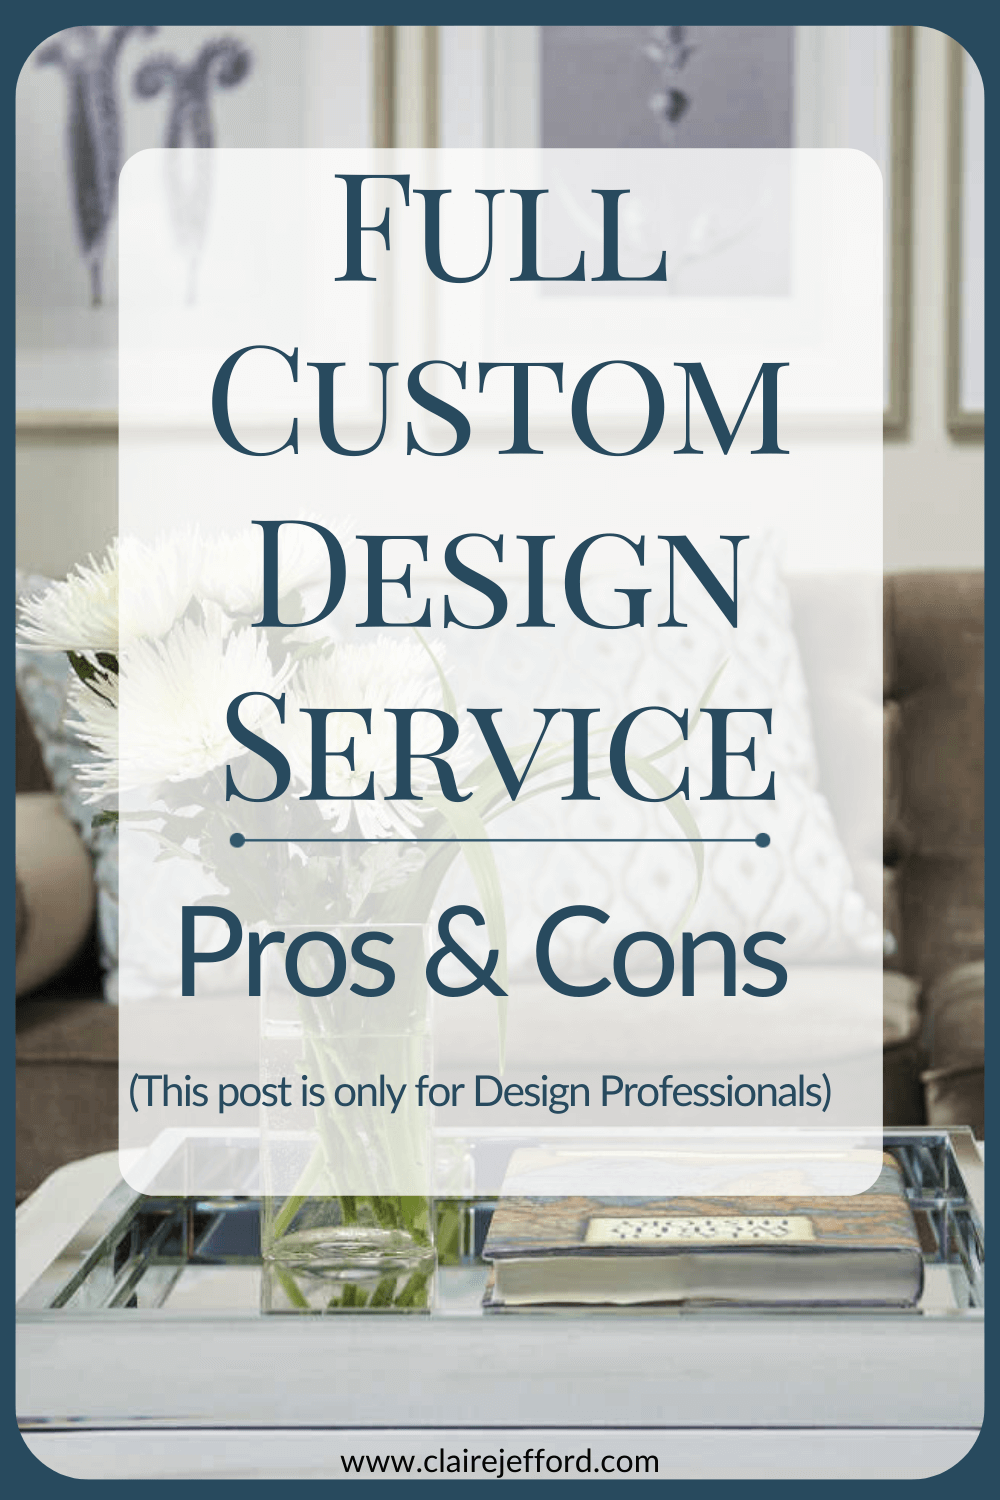 Full Custom Design Service